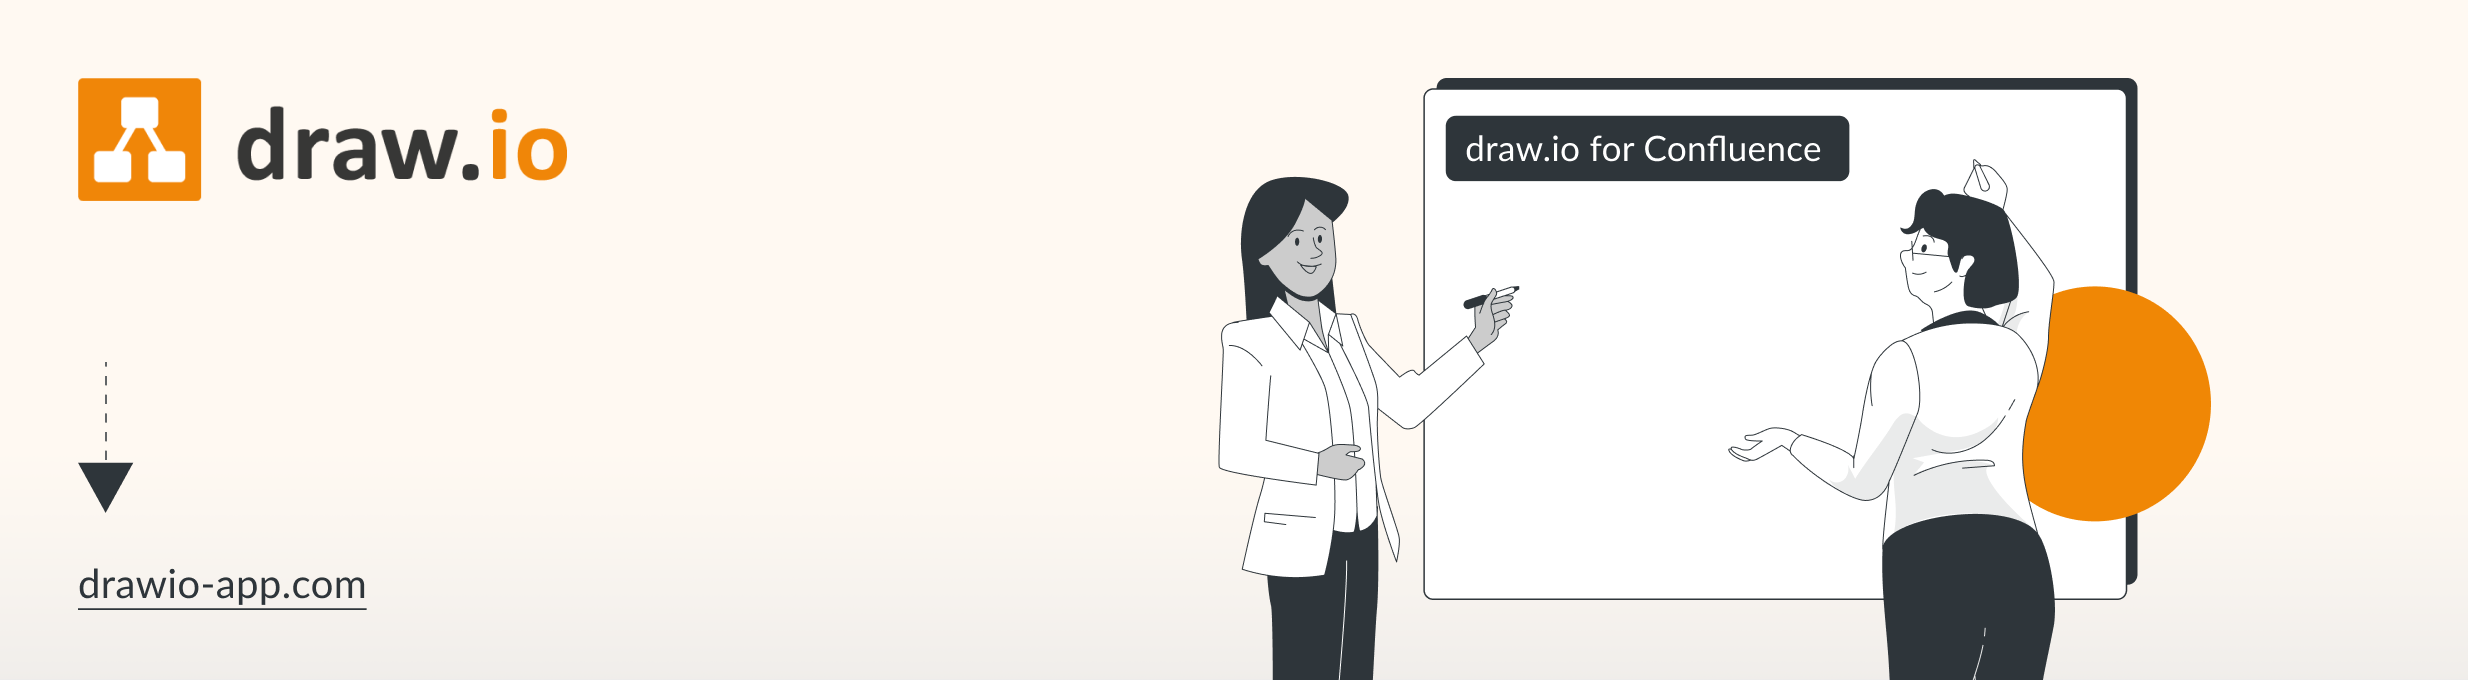 draw.io bietet ein neues Feature für Live-Zusammenarbeit: Bearbeite Diagramme in Confluence gemeinsam und in Echtzeit mit deinen Kolleg*innen!